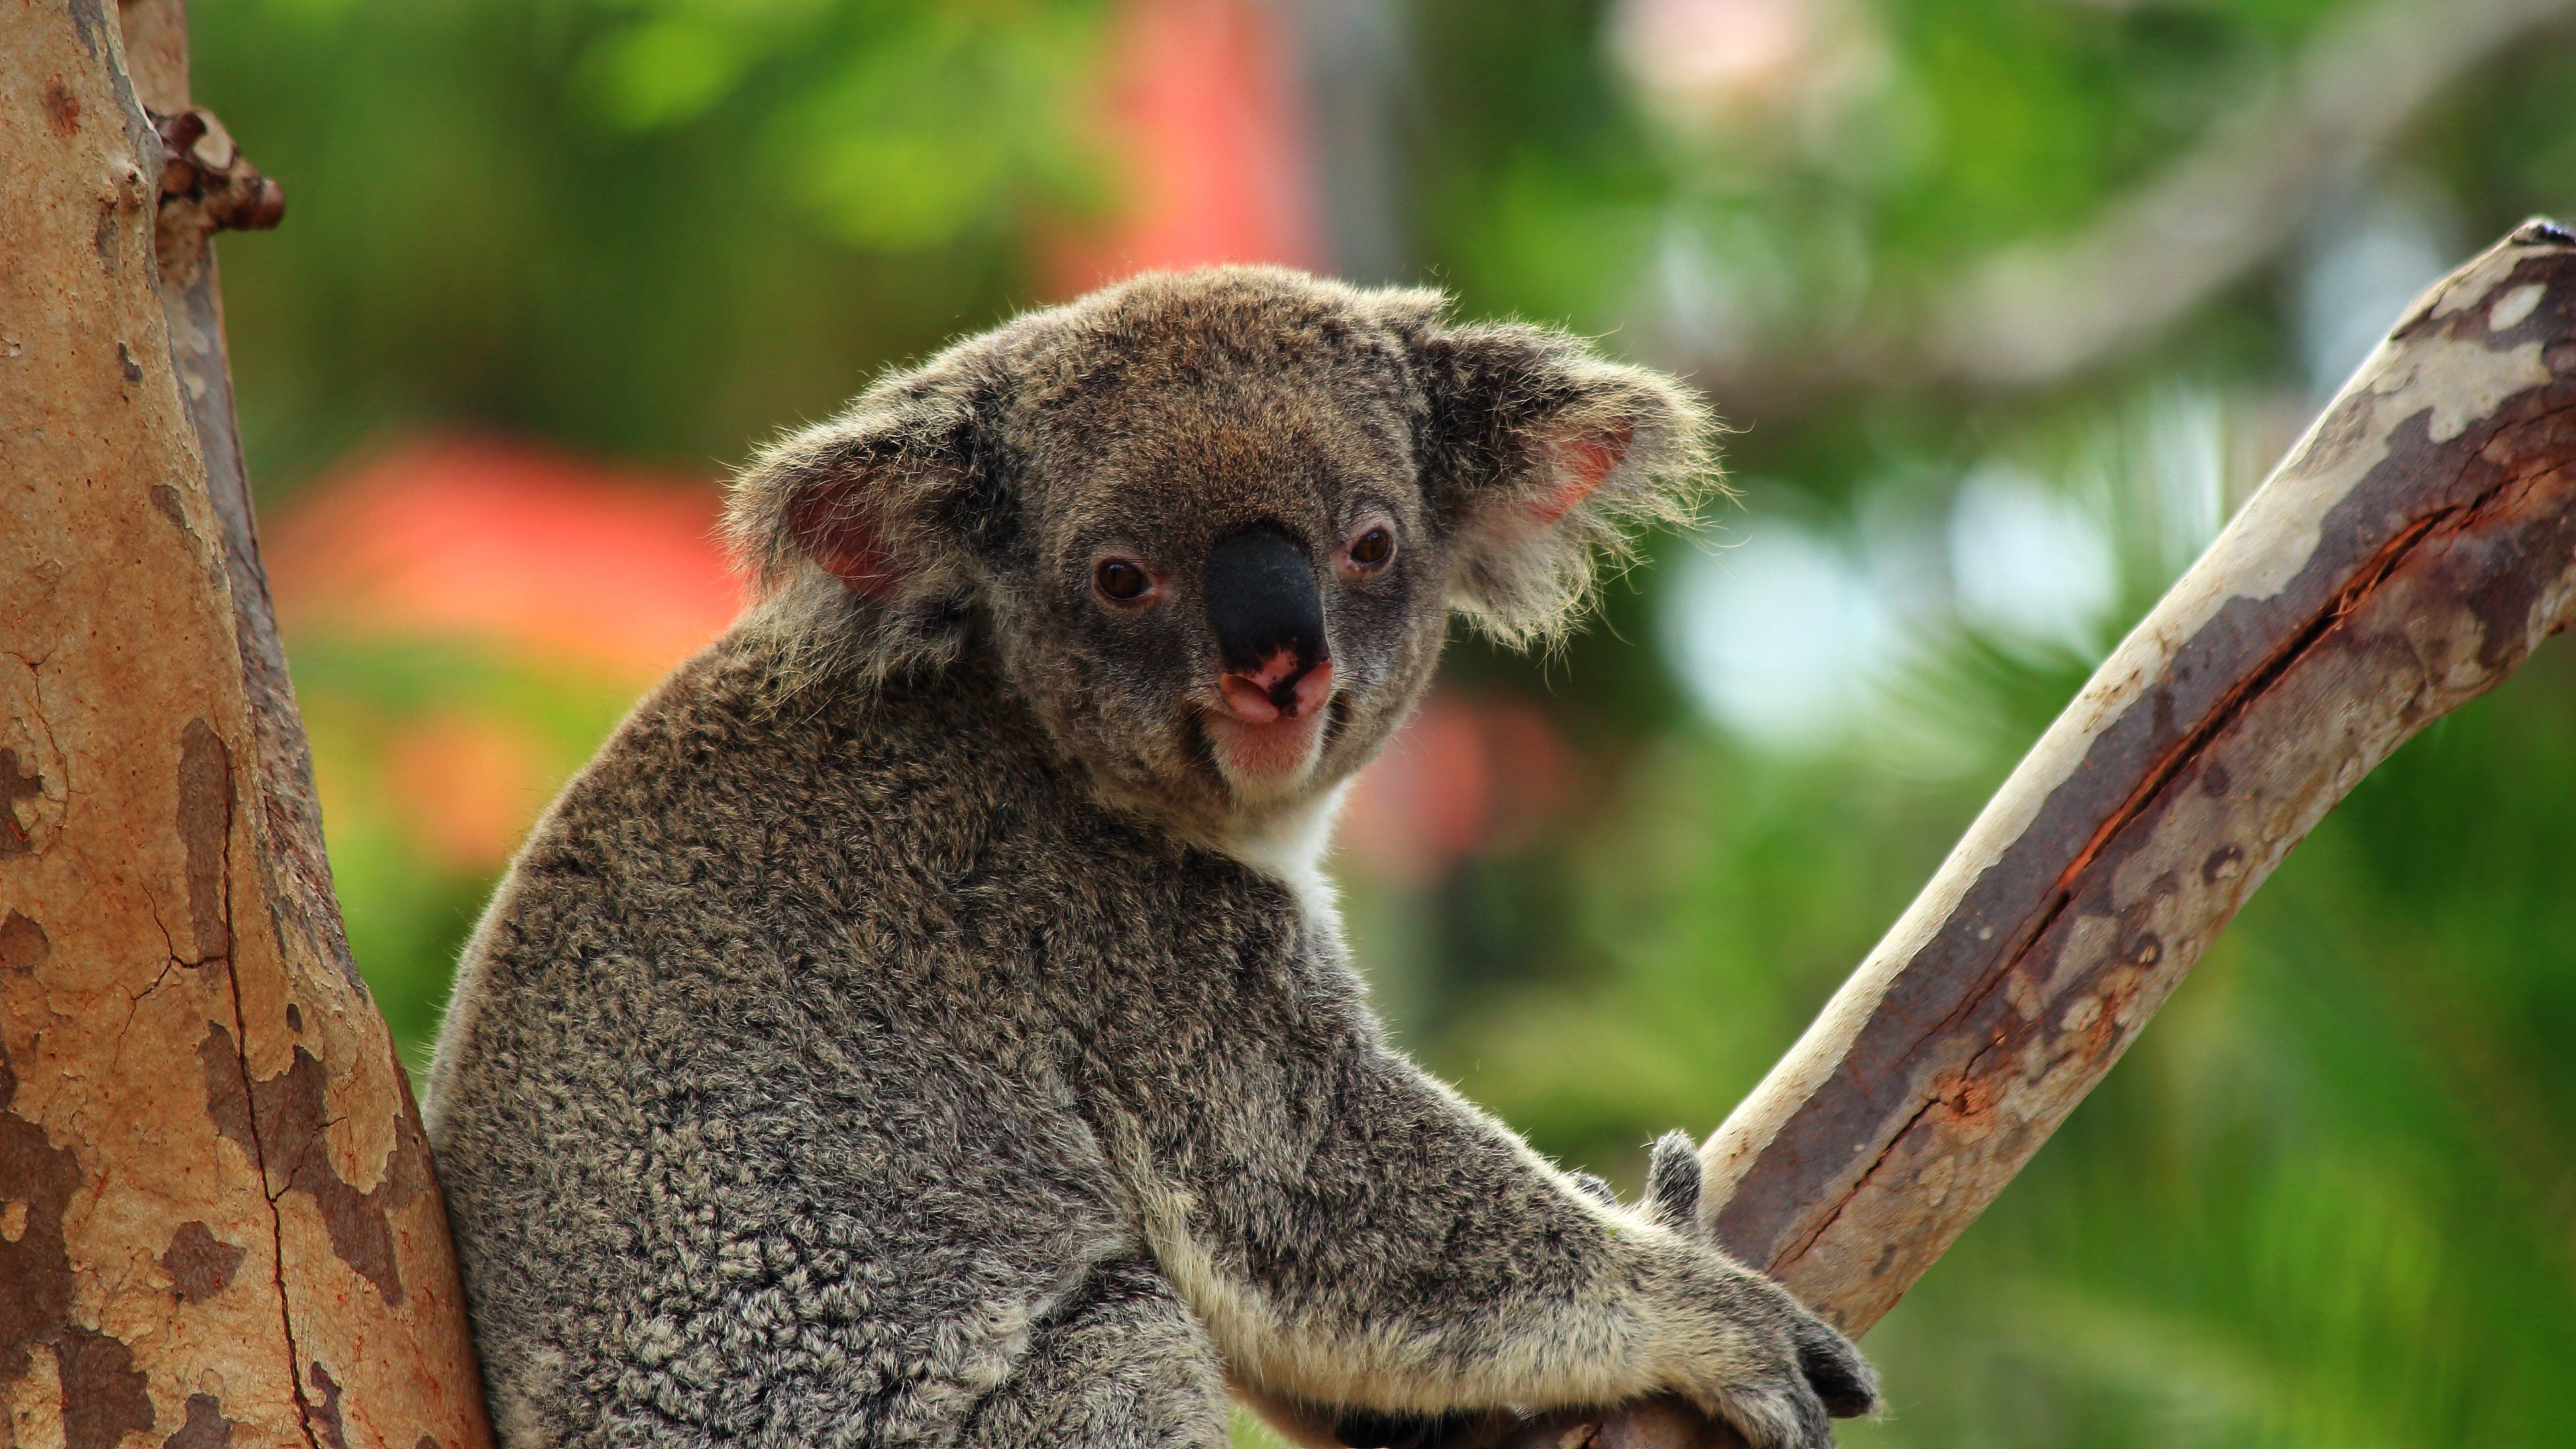 Koala Bear Wallpaper For Desktop